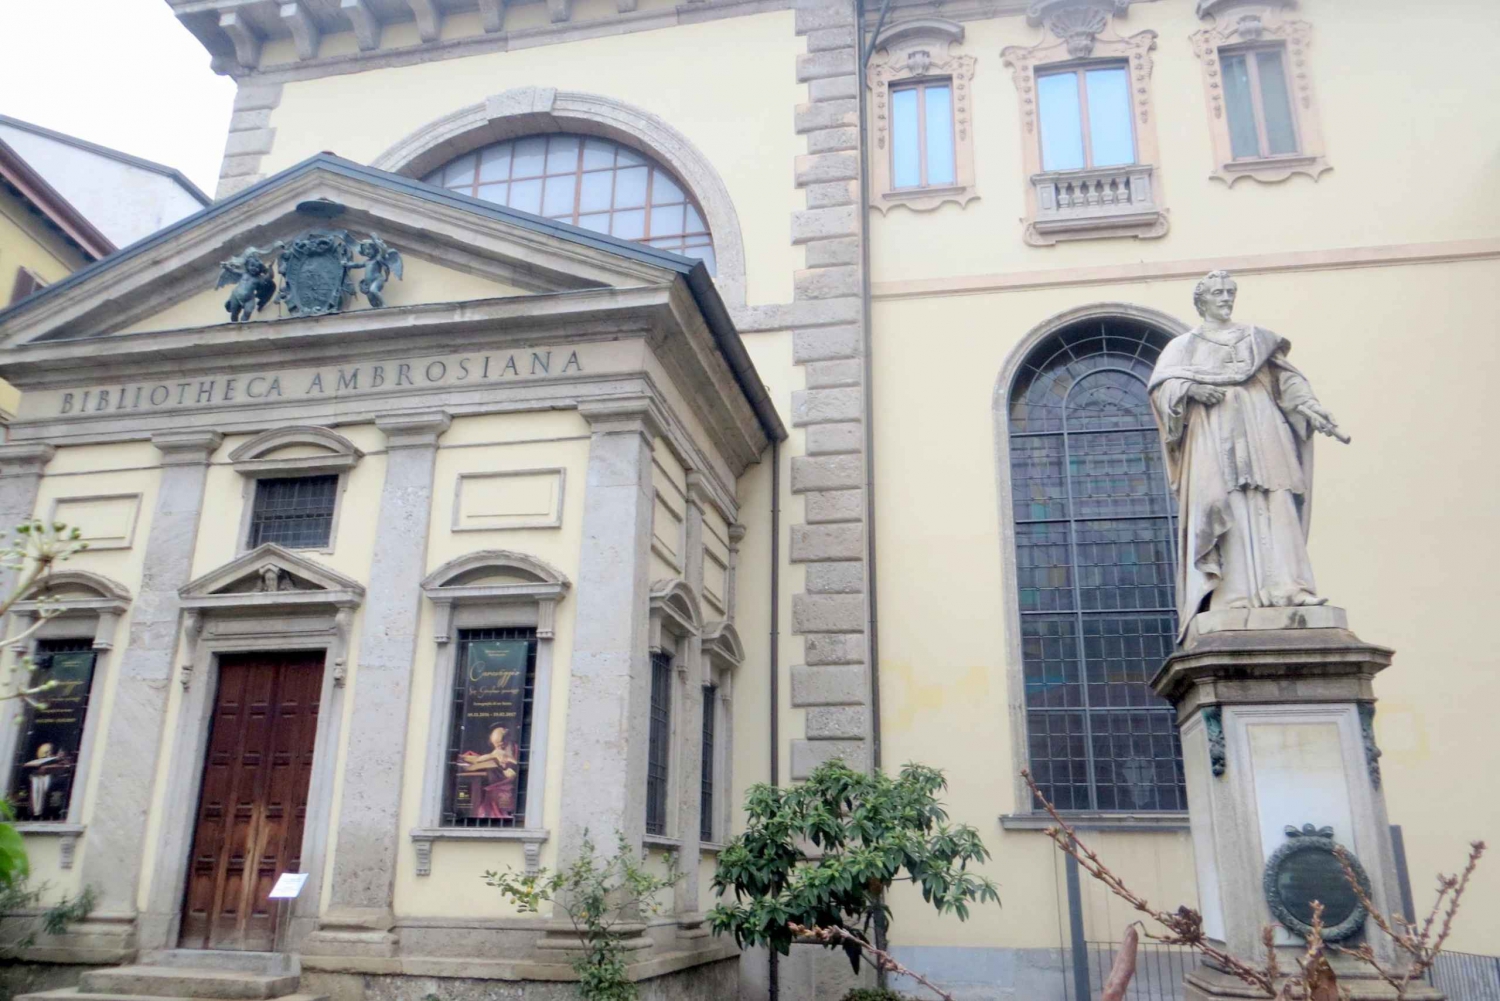 Milan: Sforza Castle & Leonardo Skip-the-Line Private Tour